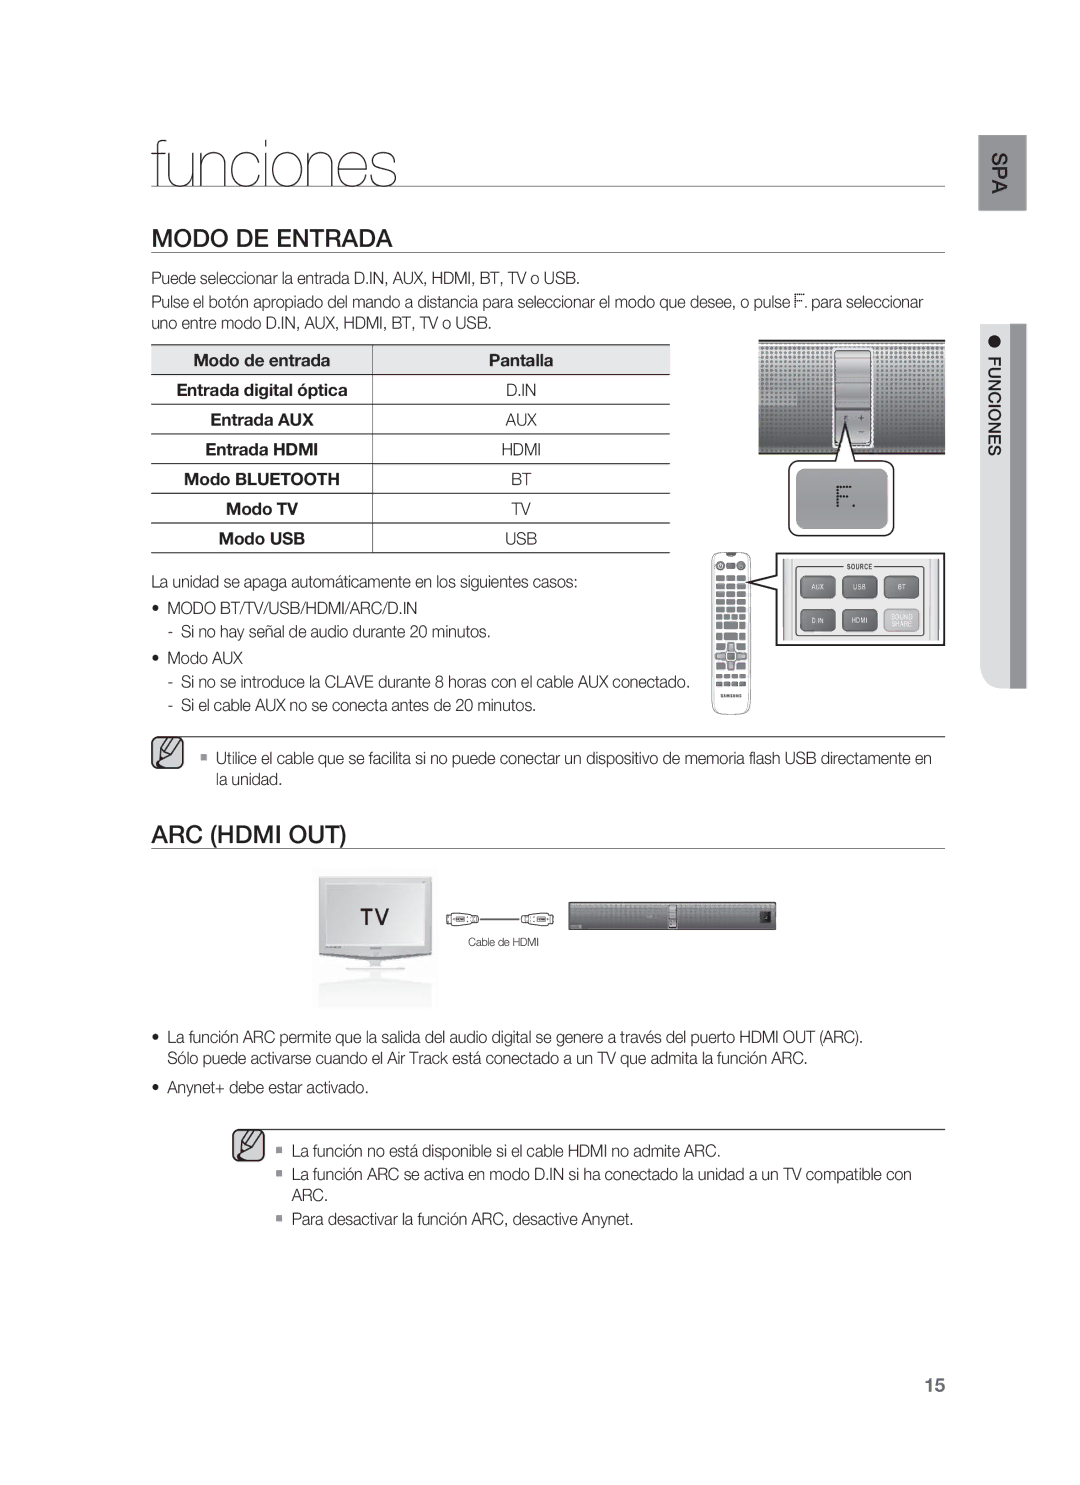 Samsung HW-F850/ZF Funciones, Modo DE Entrada, Modo de entrada Pantalla Entrada digital óptica Entrada AUX, Entrada Hdmi 